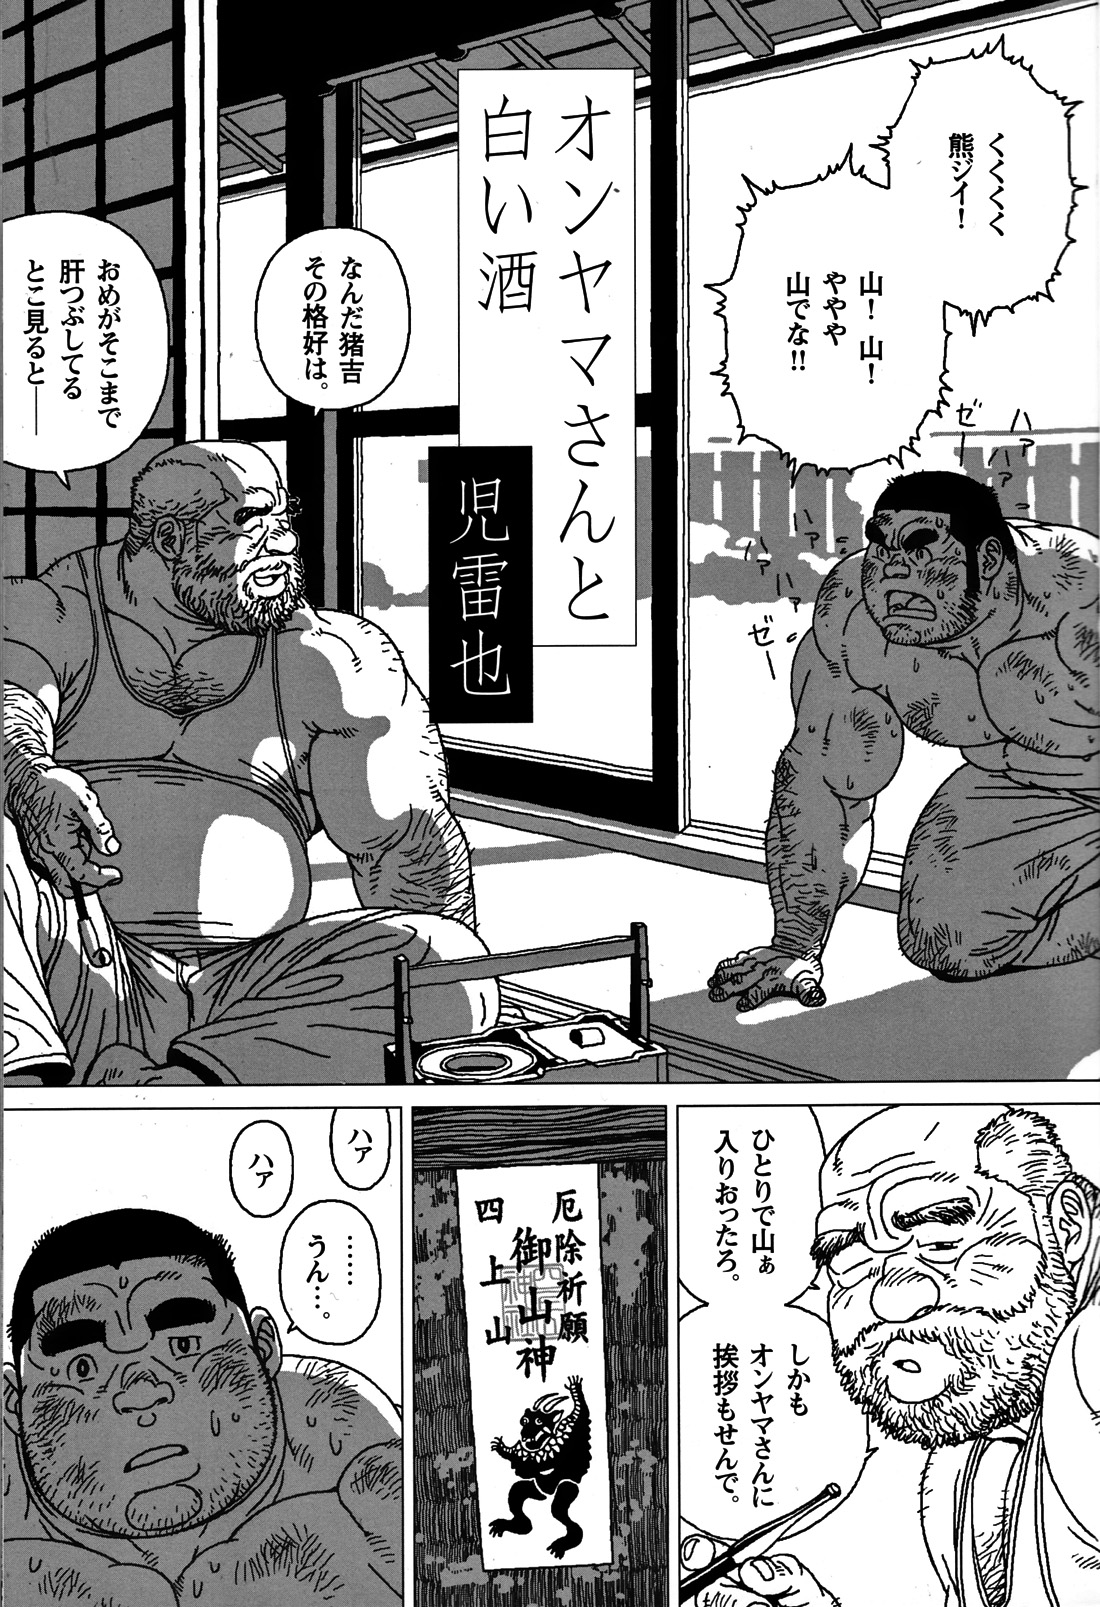 Comic G-men Gaho No. 06 Nikutai Roudousha page 2 full